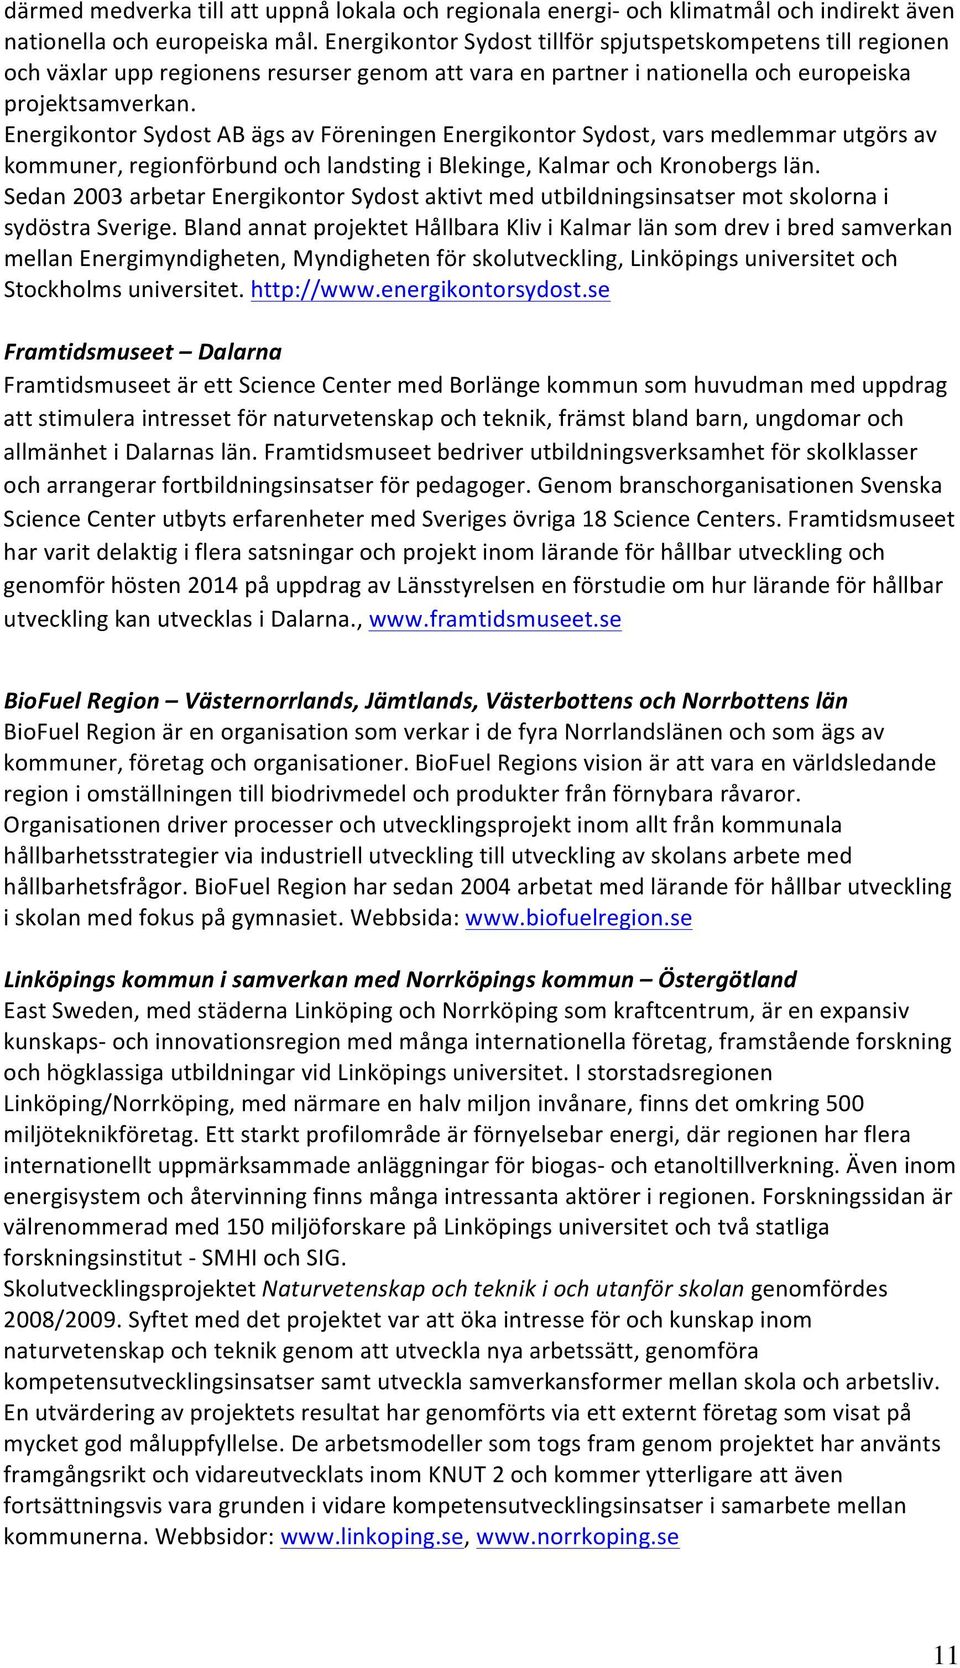 Energikontor Sydost AB ägs av Föreningen Energikontor Sydost, vars medlemmar utgörs av kommuner, regionförbund och landsting i Blekinge, Kalmar och Kronobergs län.